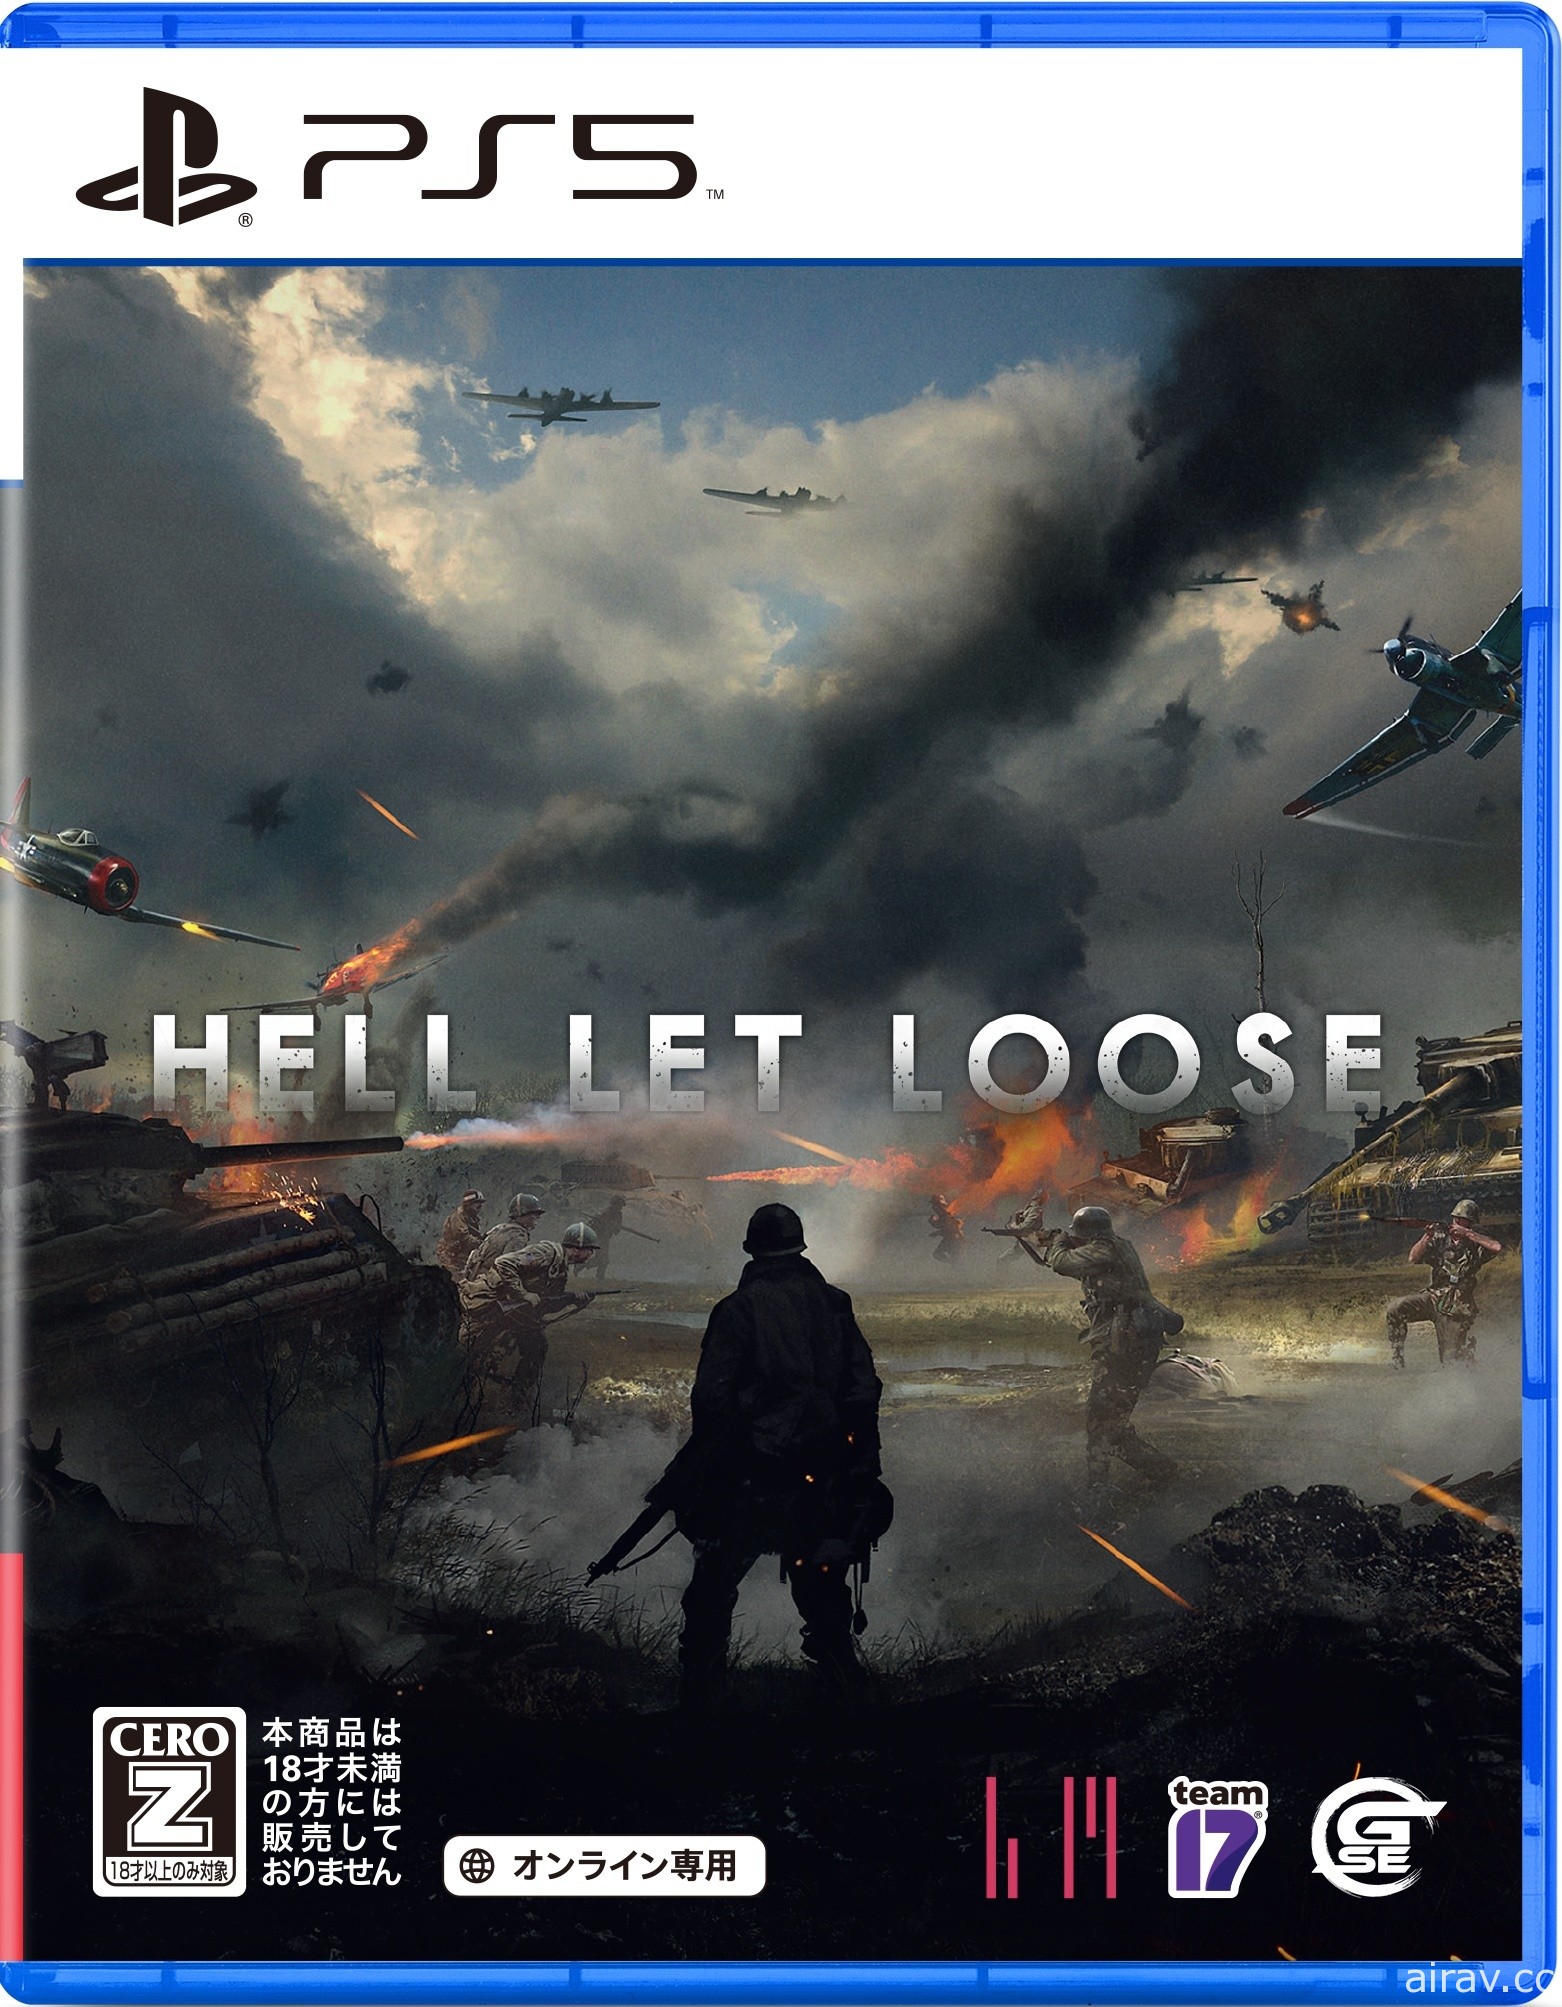 《集火地獄 Hell Let Loose》PS5 版發售日確定 介紹活用 DualSense 無線控制器的功能